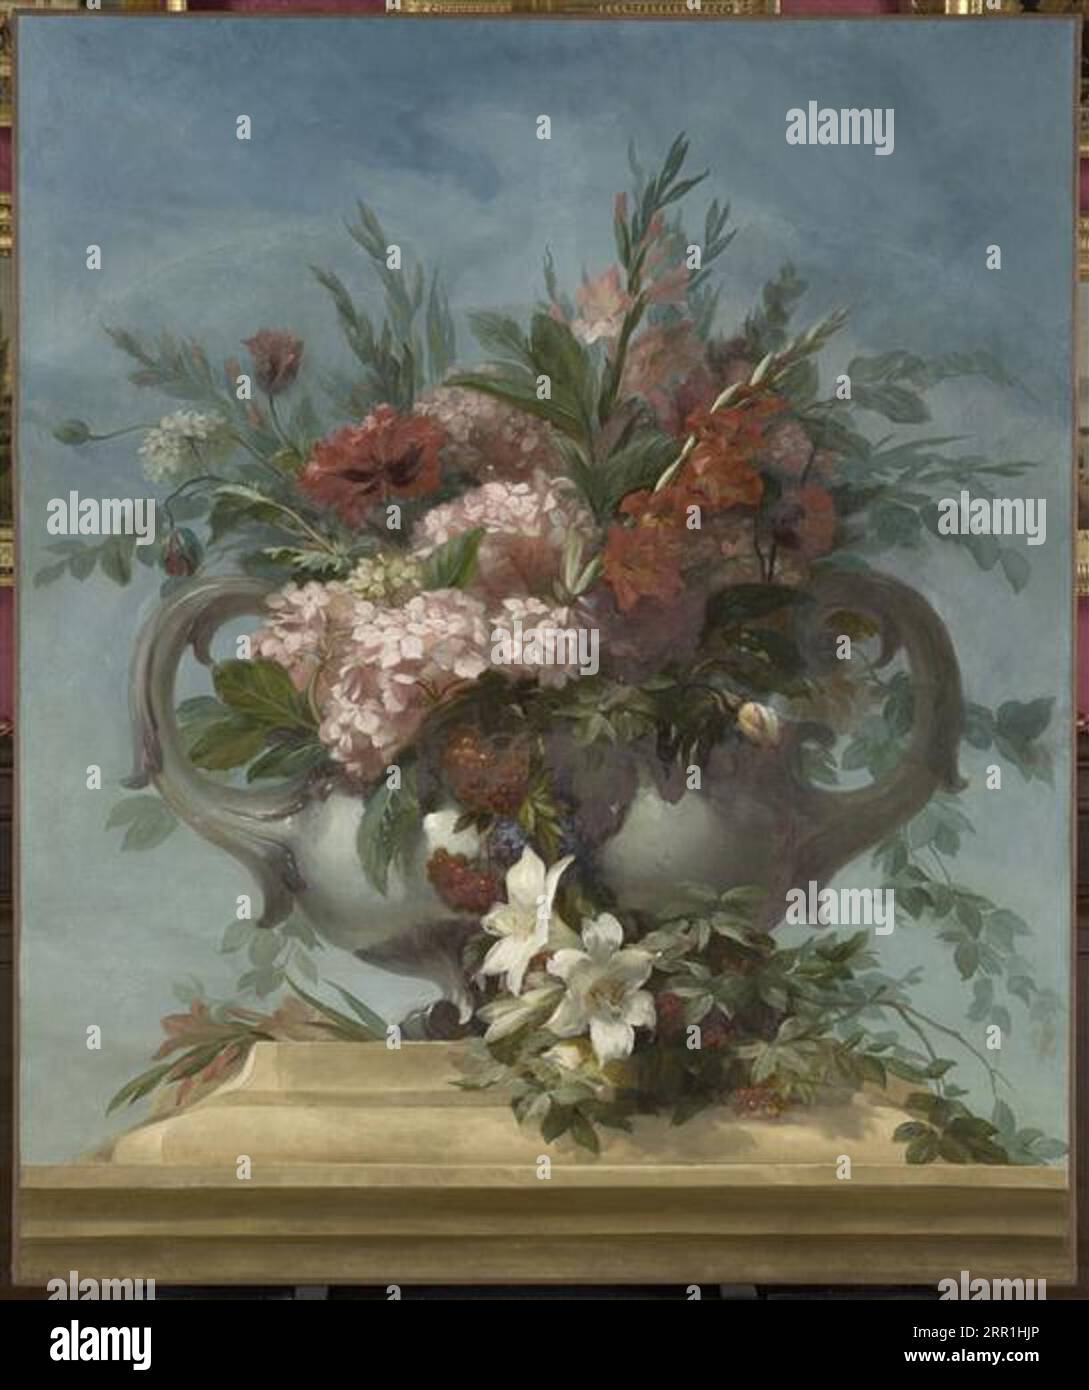 Vase de fleurs circa 1858 by Alexis-Joseph Mazerolle Stock Photo